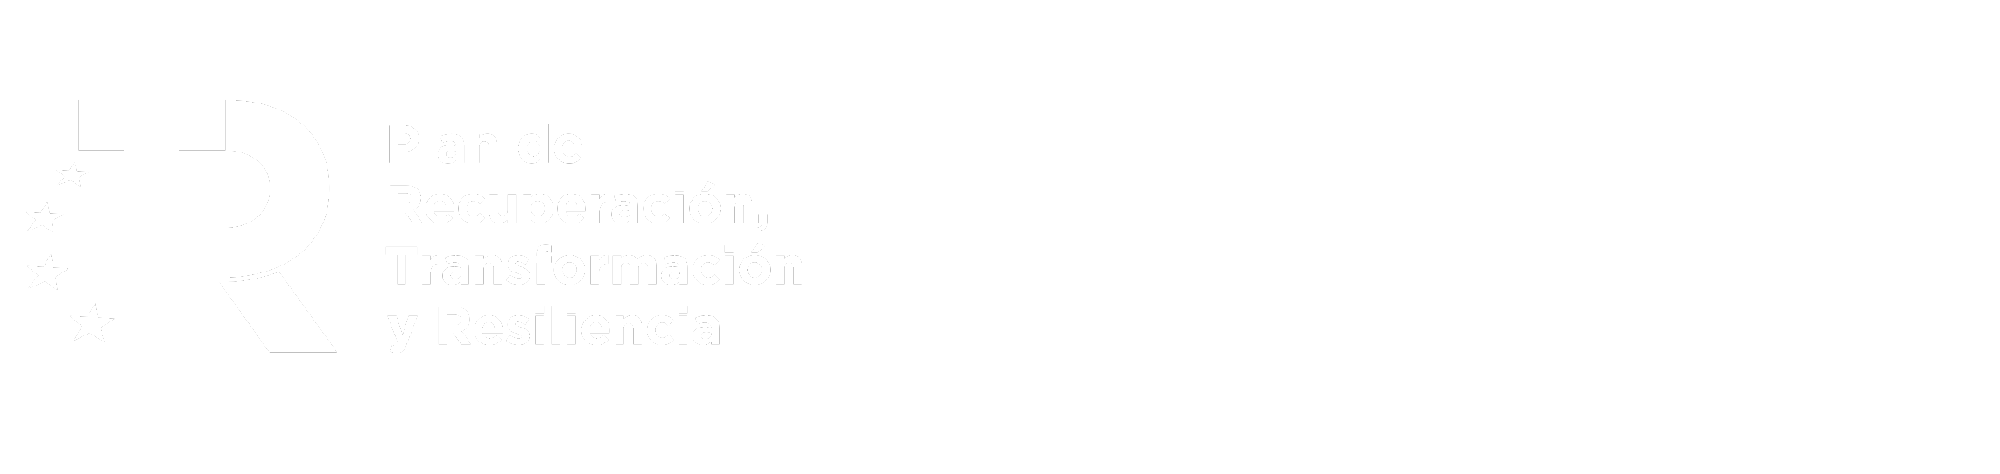 Logotipos oficiales Financiado por la Unión Europea y Plan de Recuperación, Transformación y Resilencia